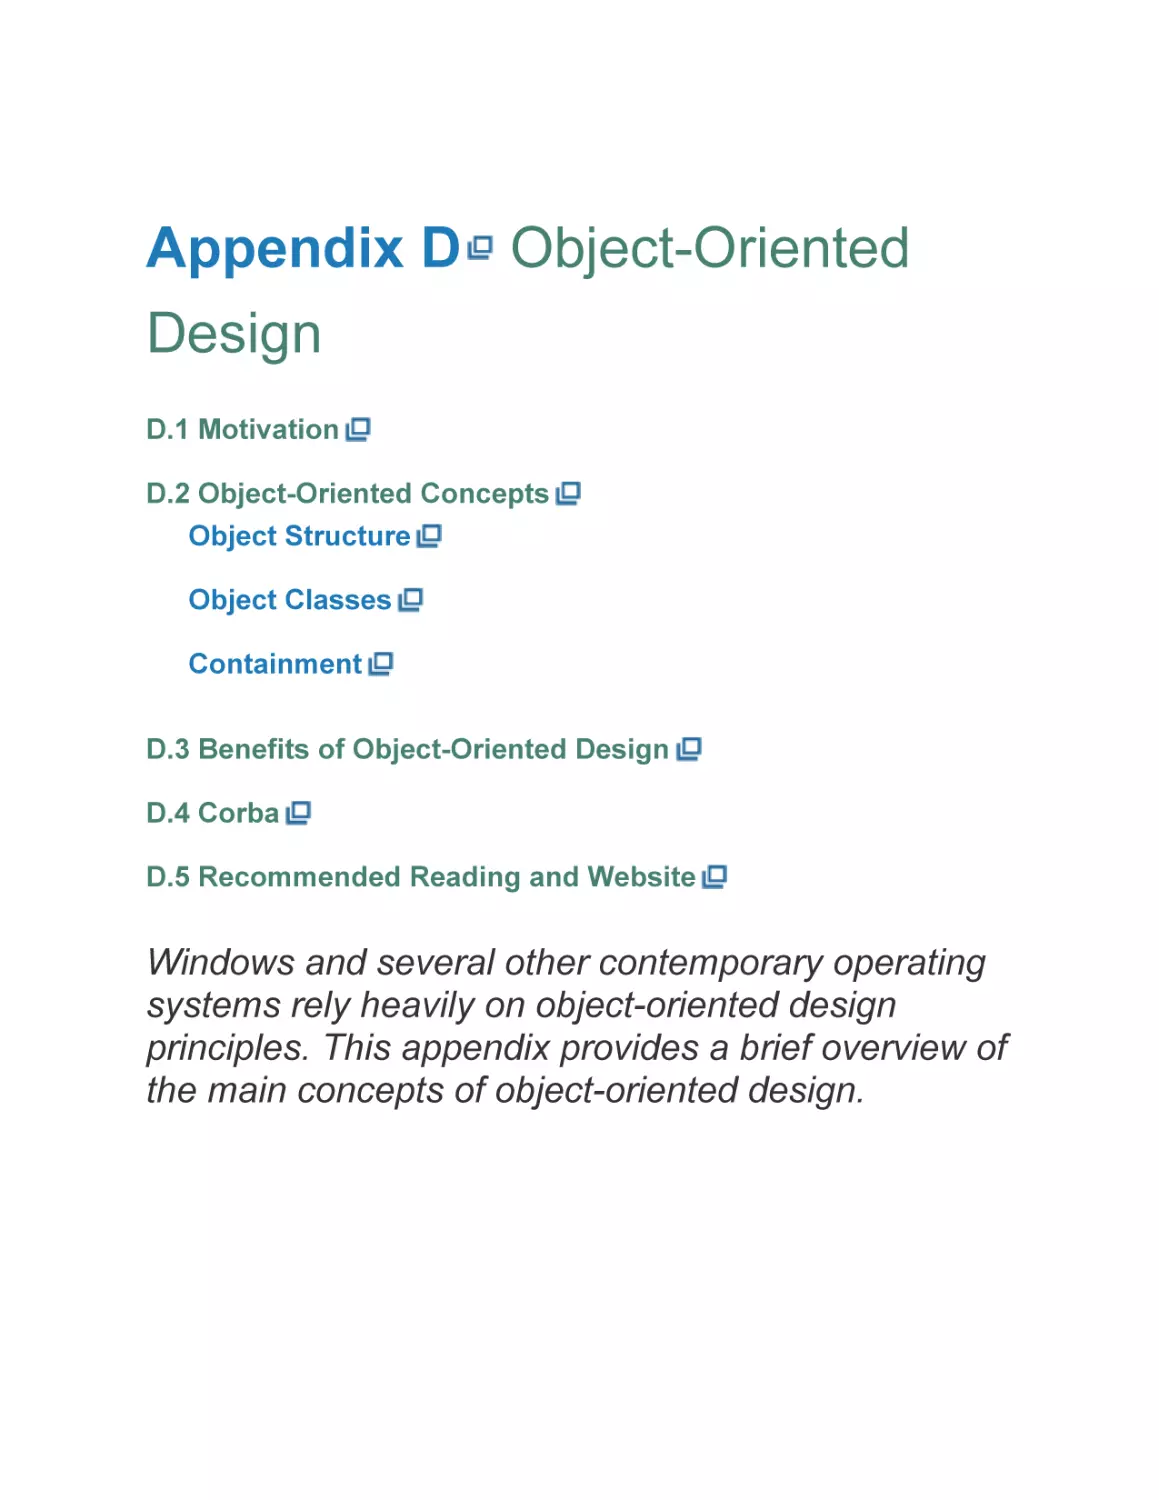 Appendix D Object-Oriented Design